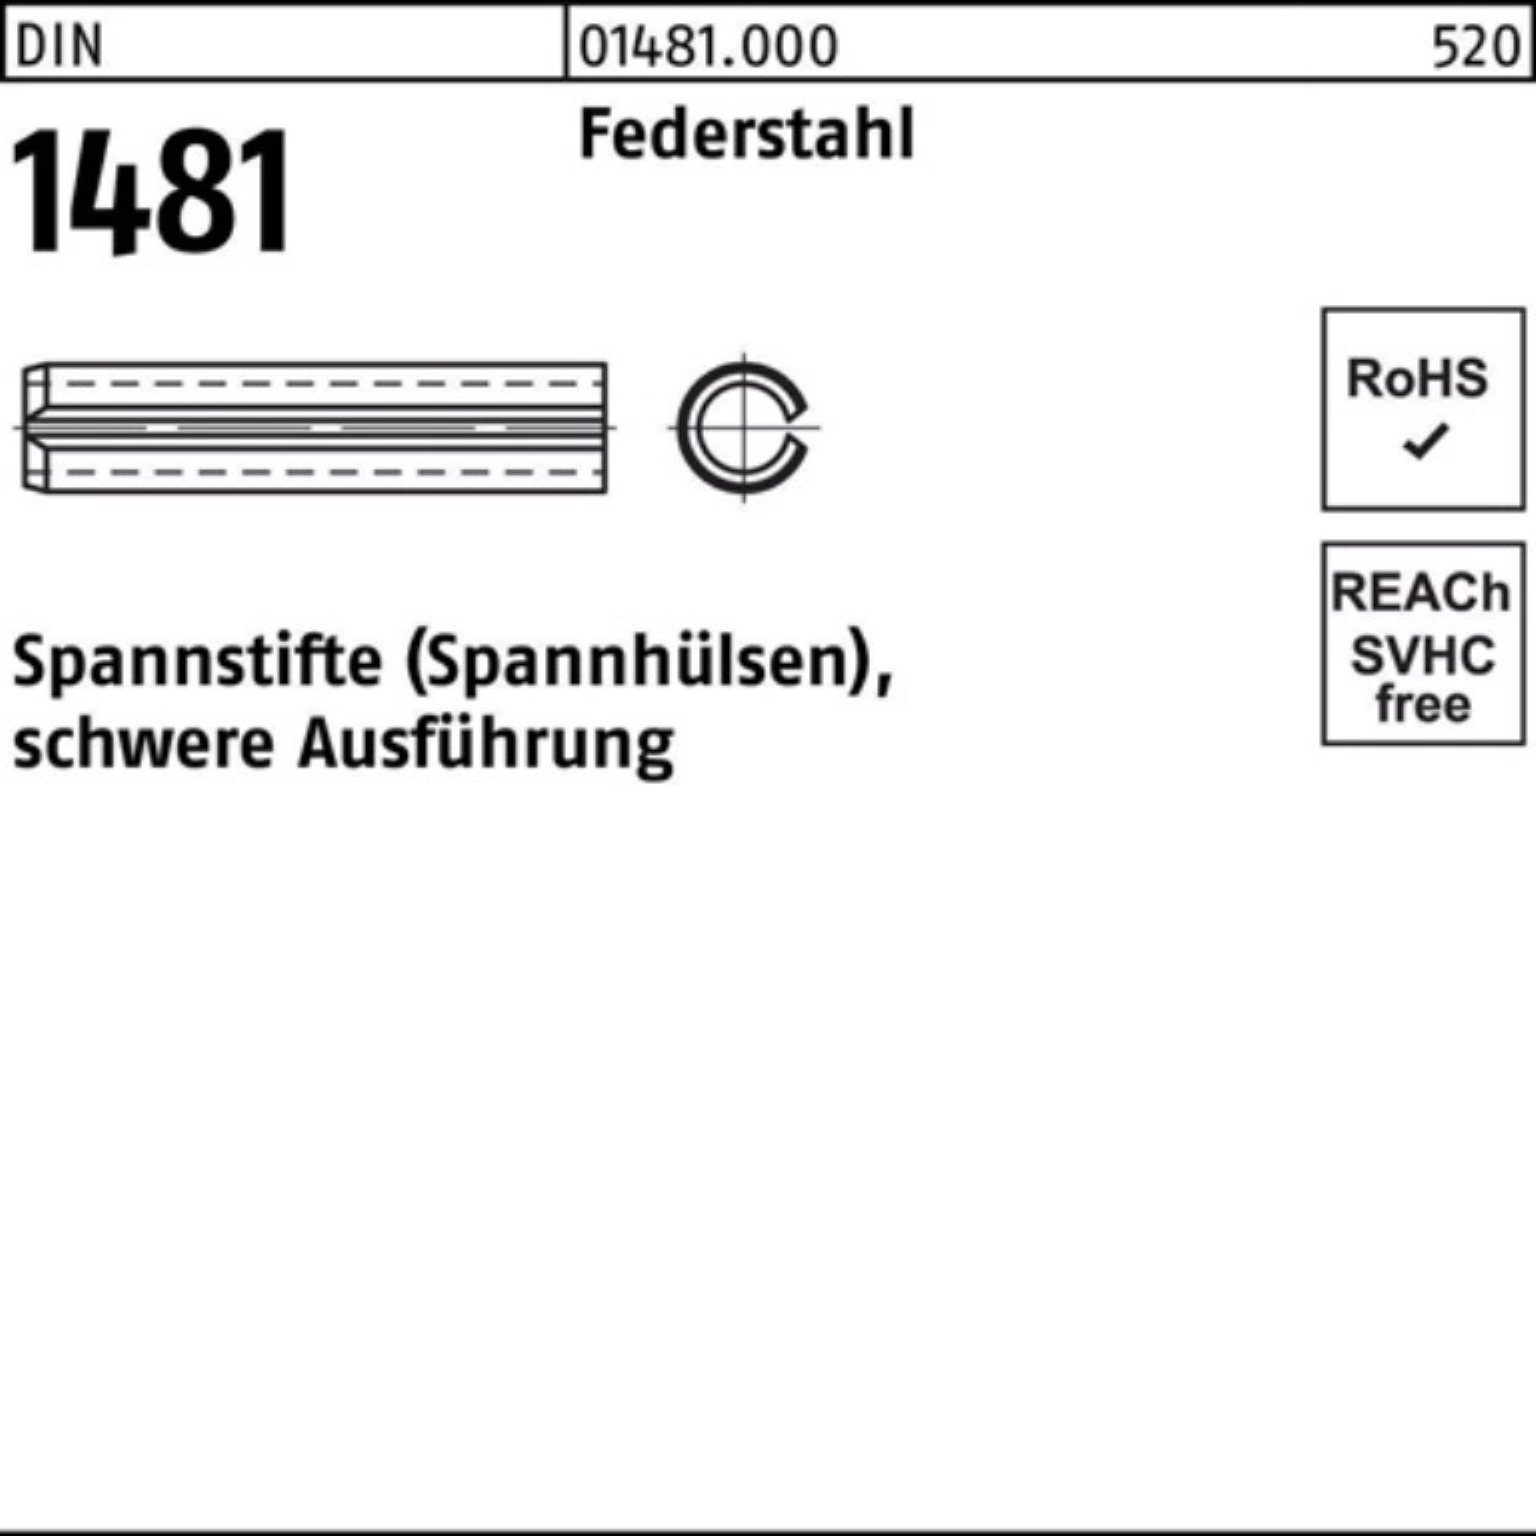 Reyher Spannstift 100er Pack Spannstift 12x Ausführung 90 1481 DIN 2 Federstahl schwere